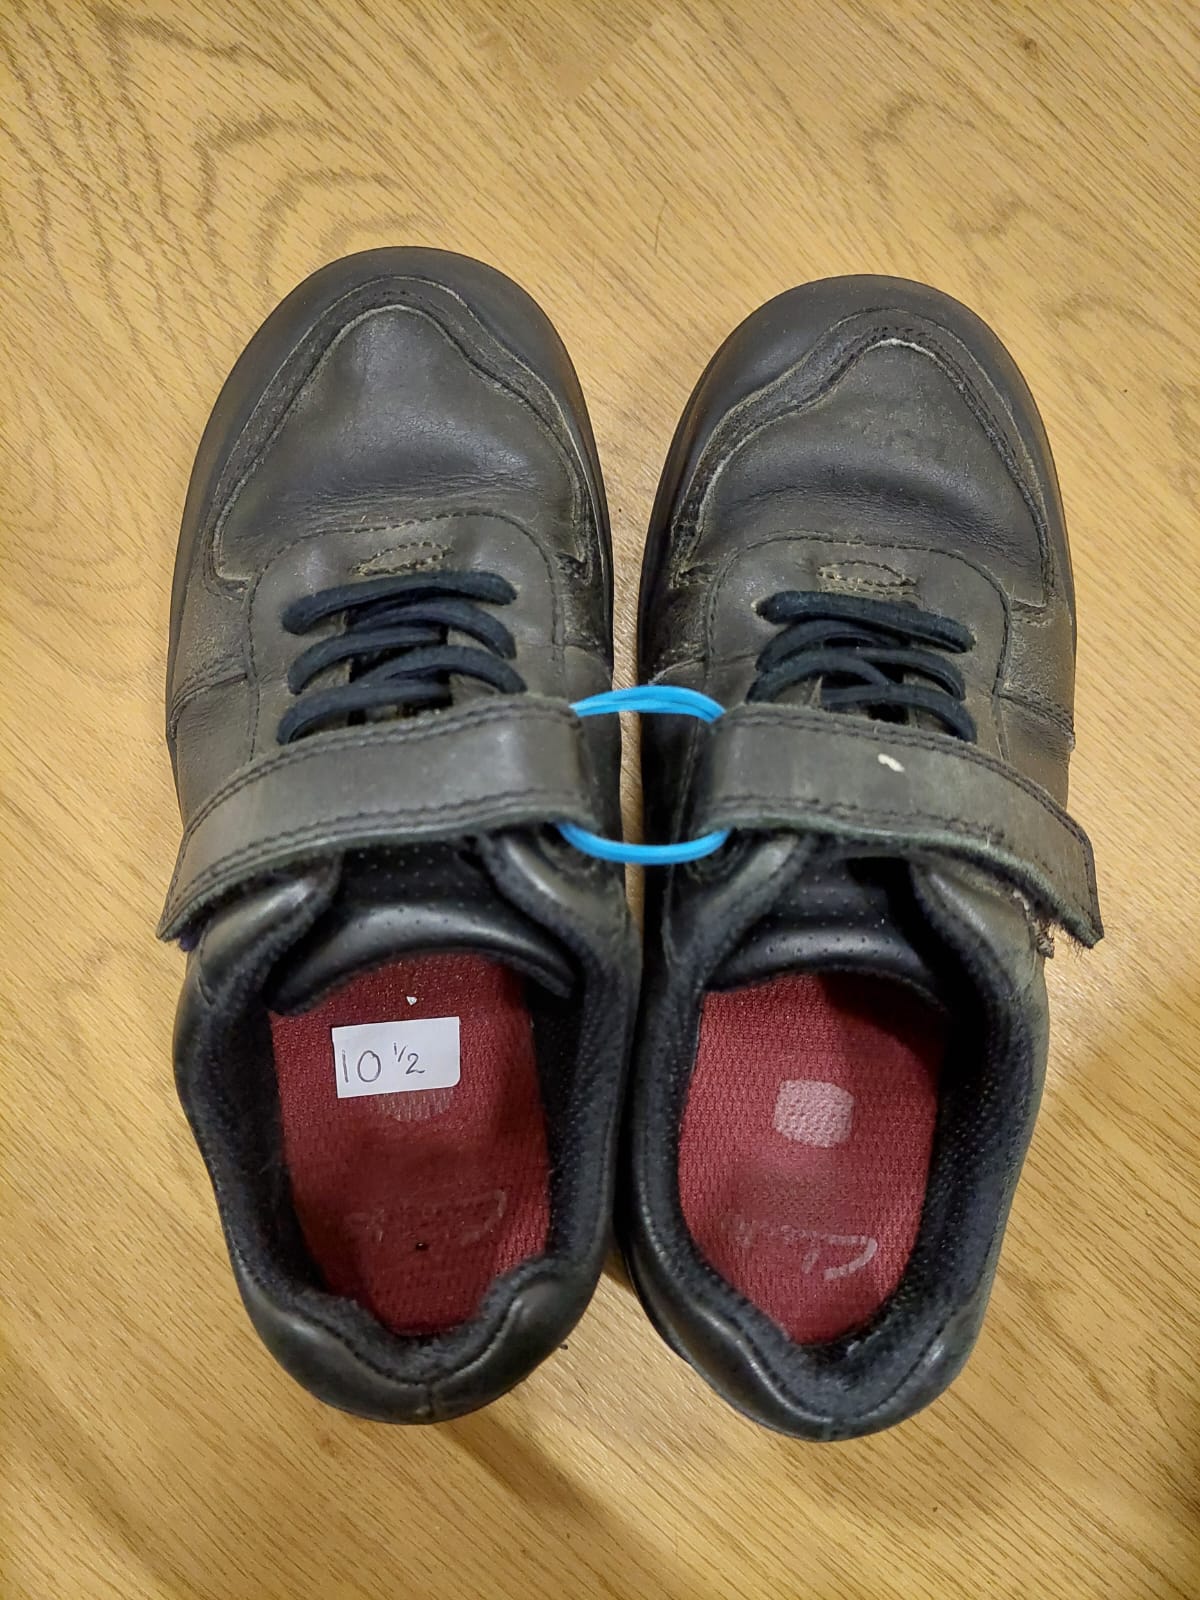 Boys shoes Size 10.5 (jnr)